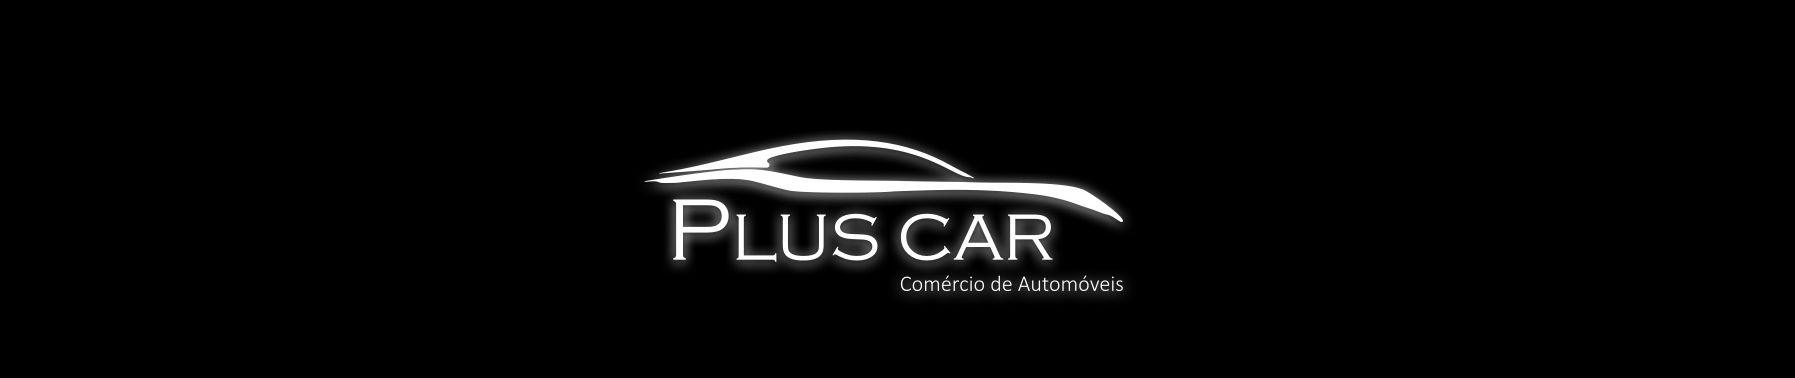 Plus Car Automóveis top banner